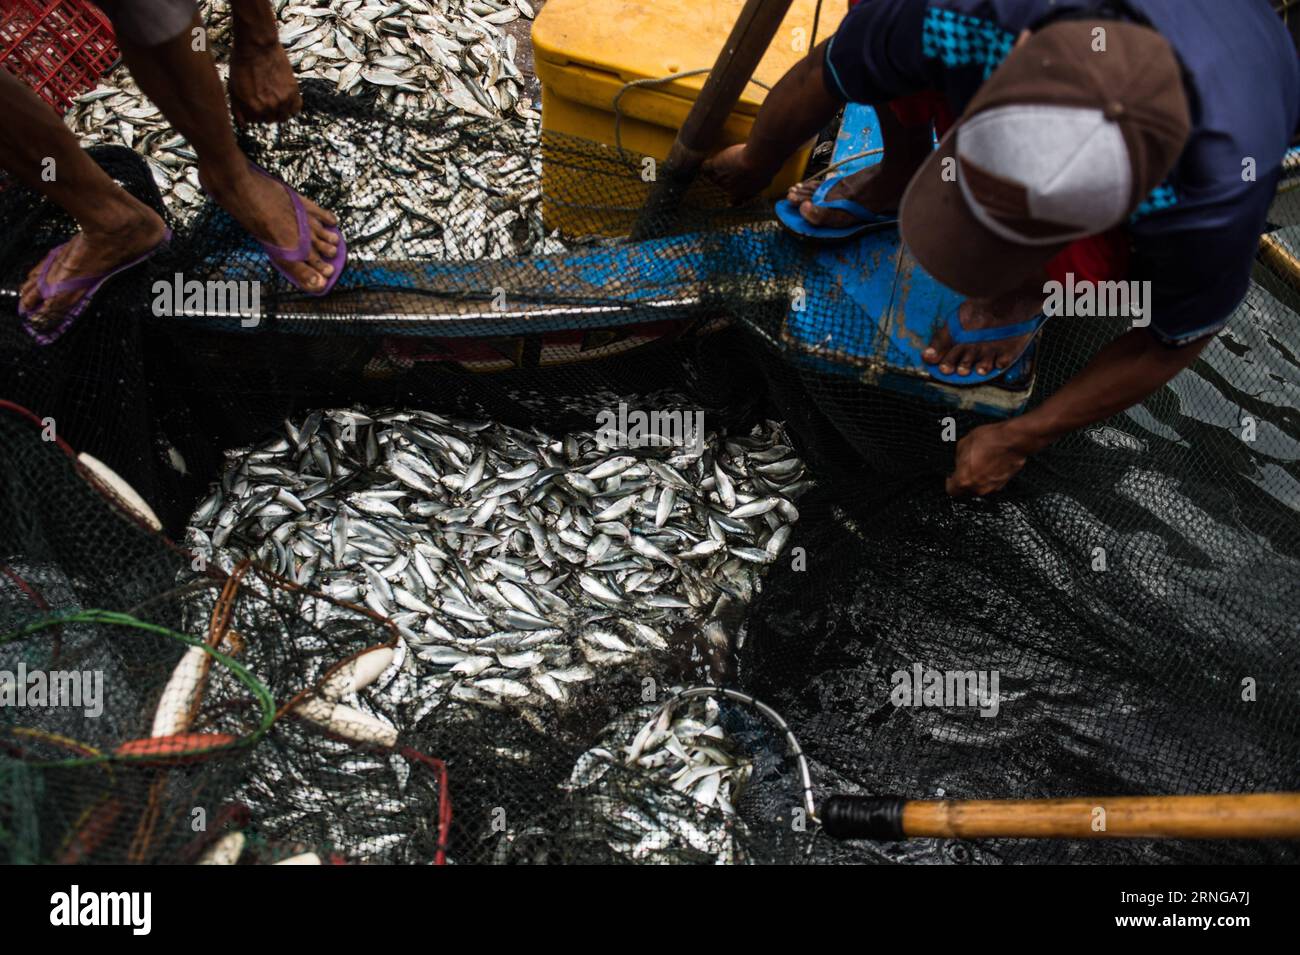 YAKARTA, 16 de septiembre de 2016 -- Pescadores recolectan peces pequeños de la red en Kalibaru, en el norte de Yakarta, Indonesia, 16 de septiembre de 2016. Estos pequeños peces capturados a lo largo de la costa norte de Yakarta no son para el consumo humano, sino que serán procesados en harina de pescado, que es el ingrediente básico de la industria de piensos para animales en Indonesia. ) (Sxk) INDONESIA-YAKARTA-VIDA DIARIA-PESCADOR VerixSanovri PUBLICATIONxNOTxINxCHN Yakarta Septiembre 16 2016 Pescadores recolectan peces pequeños de la red EN Yakarta Norte Indonesia Septiembre 16 2016 Tesis Los peces pequeños capturados a lo largo de la costa norte de Yakarta no son para el consumo humano, pero Foto de stock